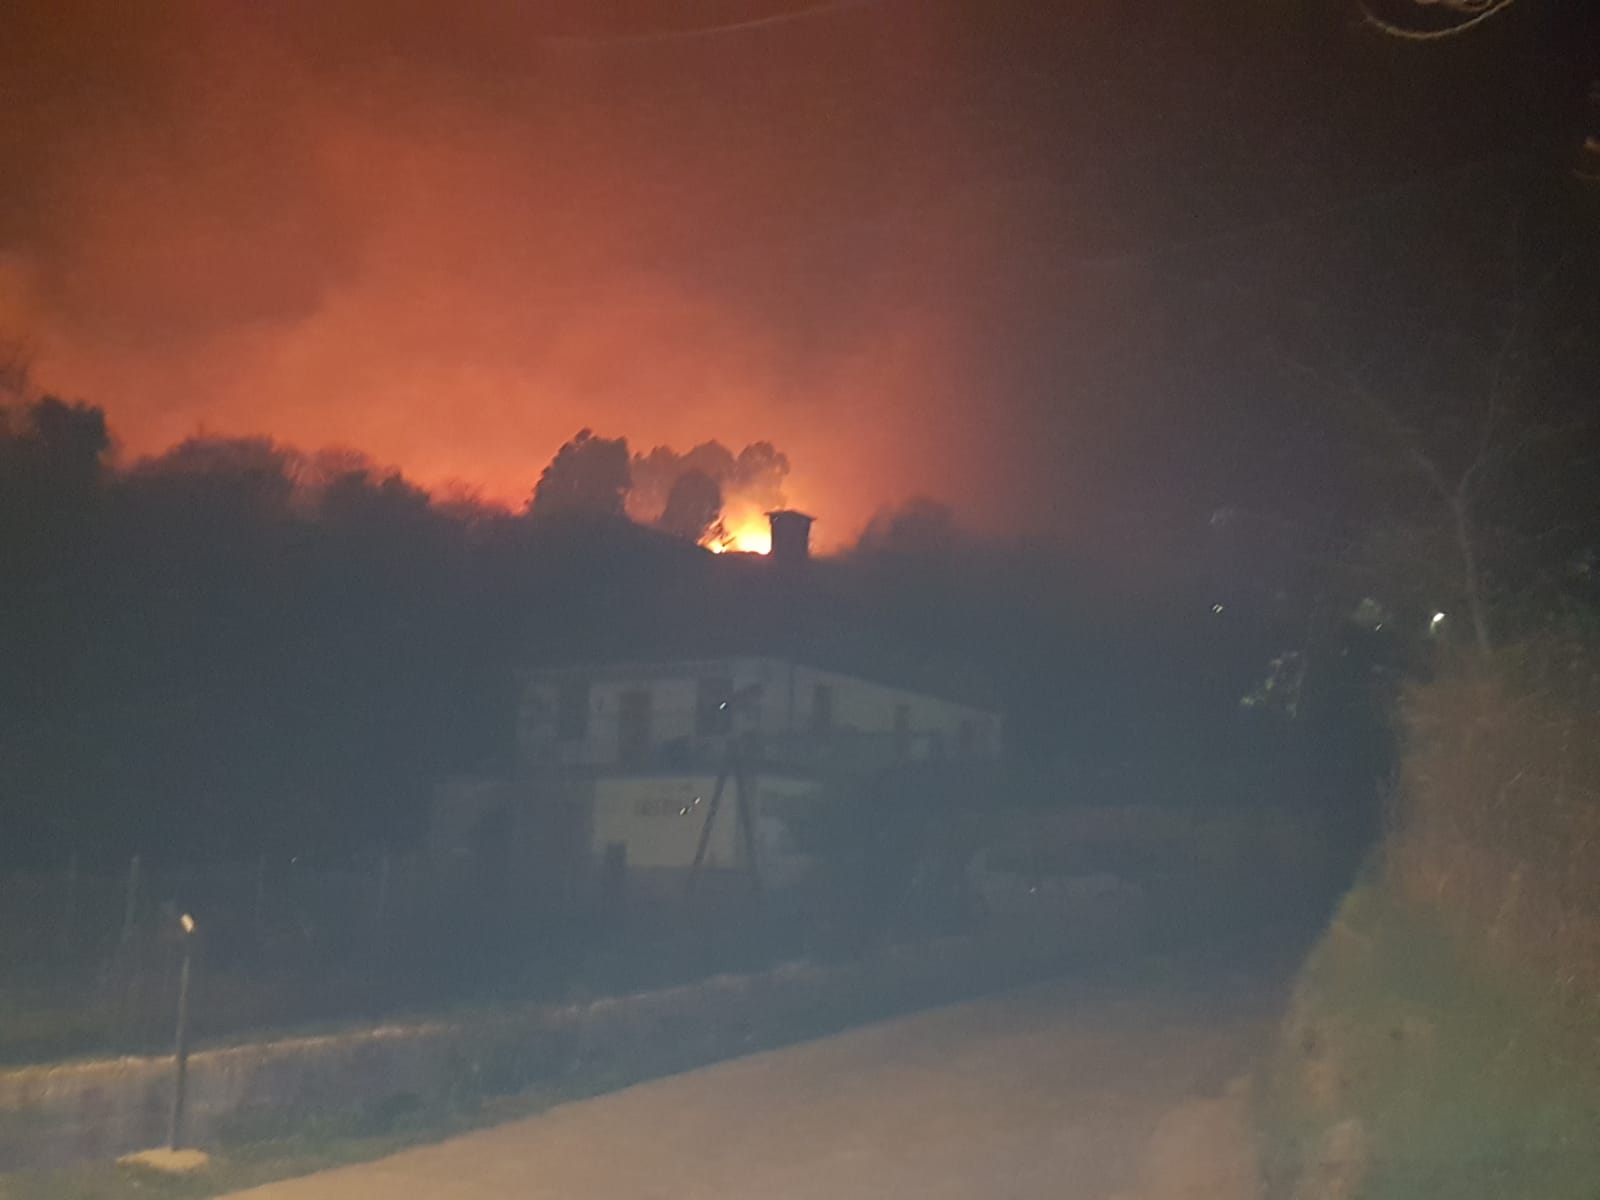 En Muskiz se han producido dos focos y han desalojado a varias familias. También ha habido fuegos en Lemoiz, Amoroto, Getxo y el Monte Ganguren, entre Bilbao y Galdakao